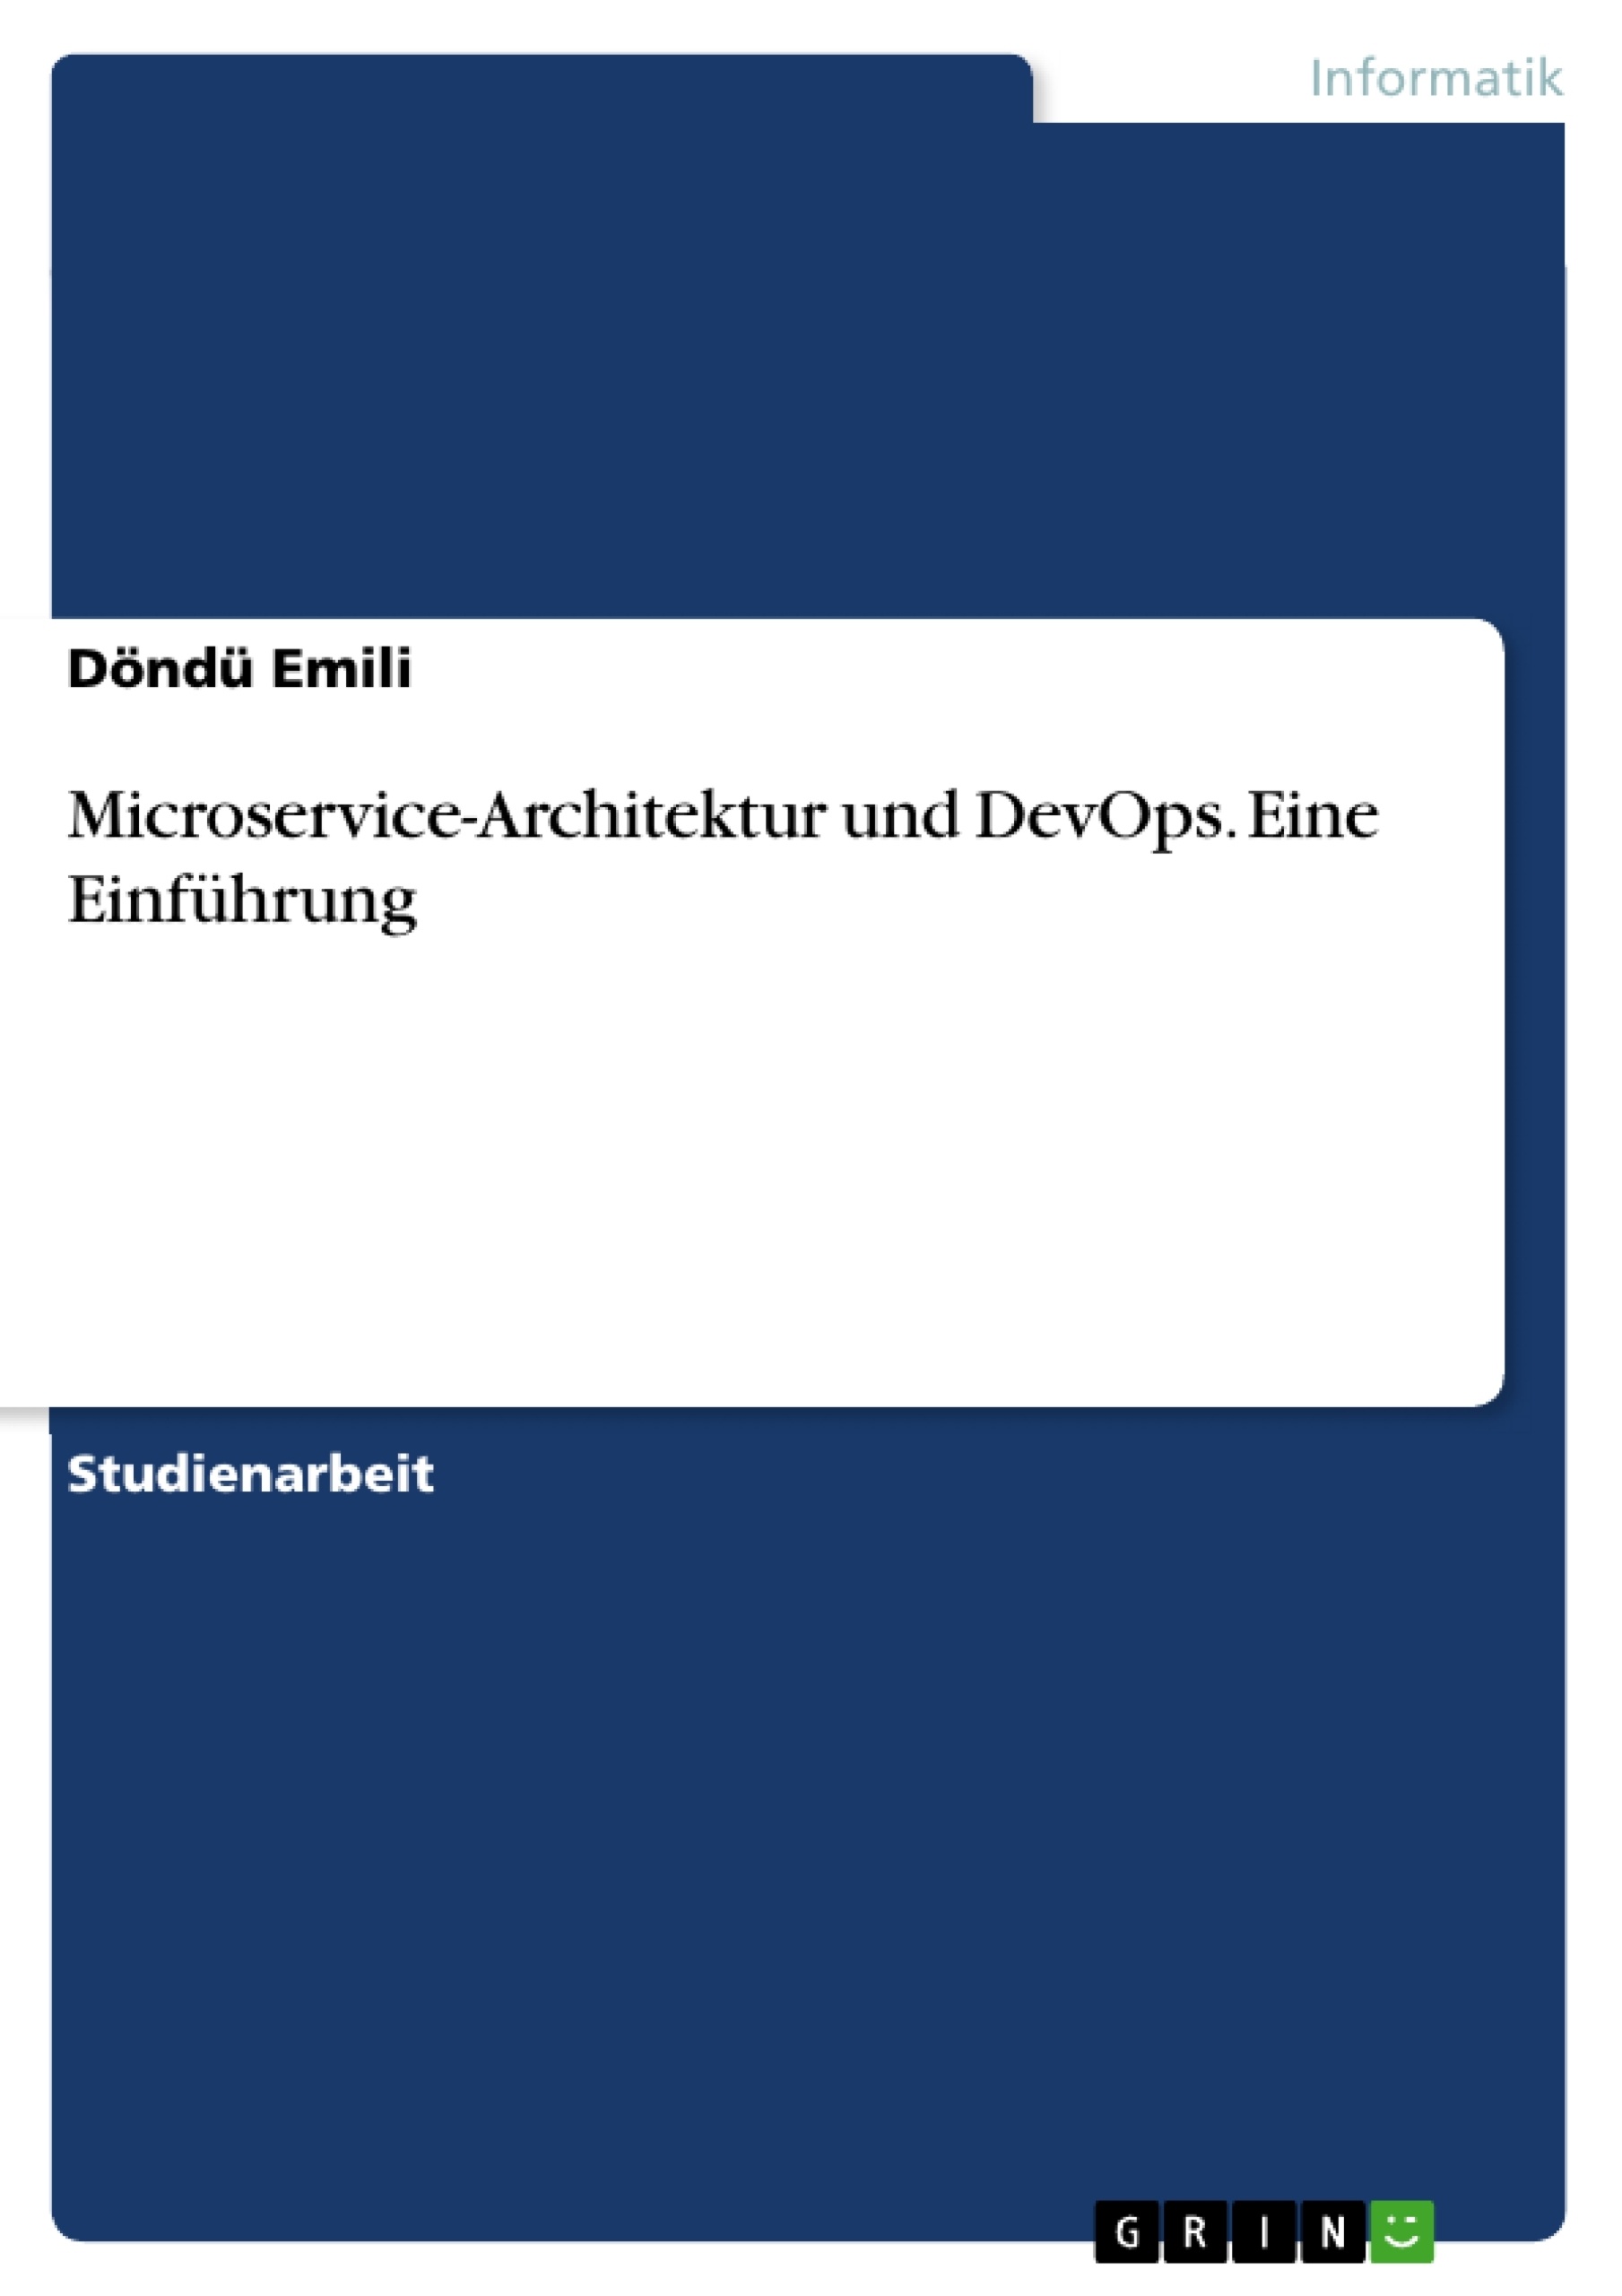 Title: Microservice-Architektur und DevOps. Eine Einführung